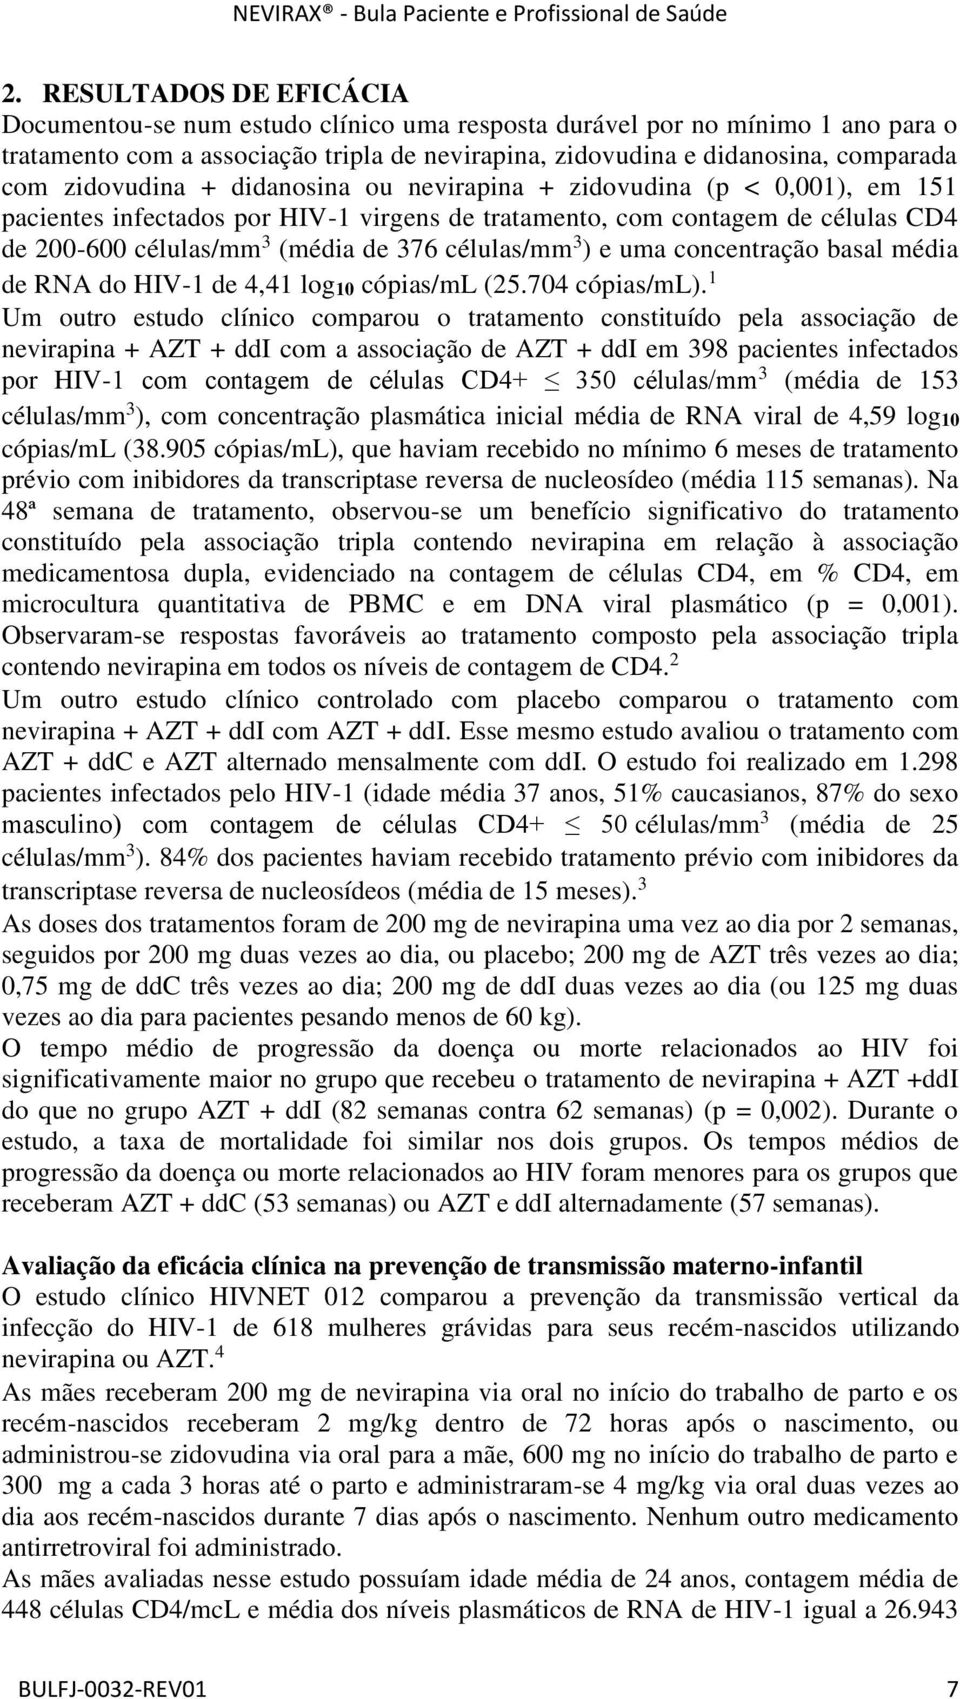 células/mm 3 ) e uma concentração basal média de RNA do HIV-1 de 4,41 log10 cópias/ml (25.704 cópias/ml).